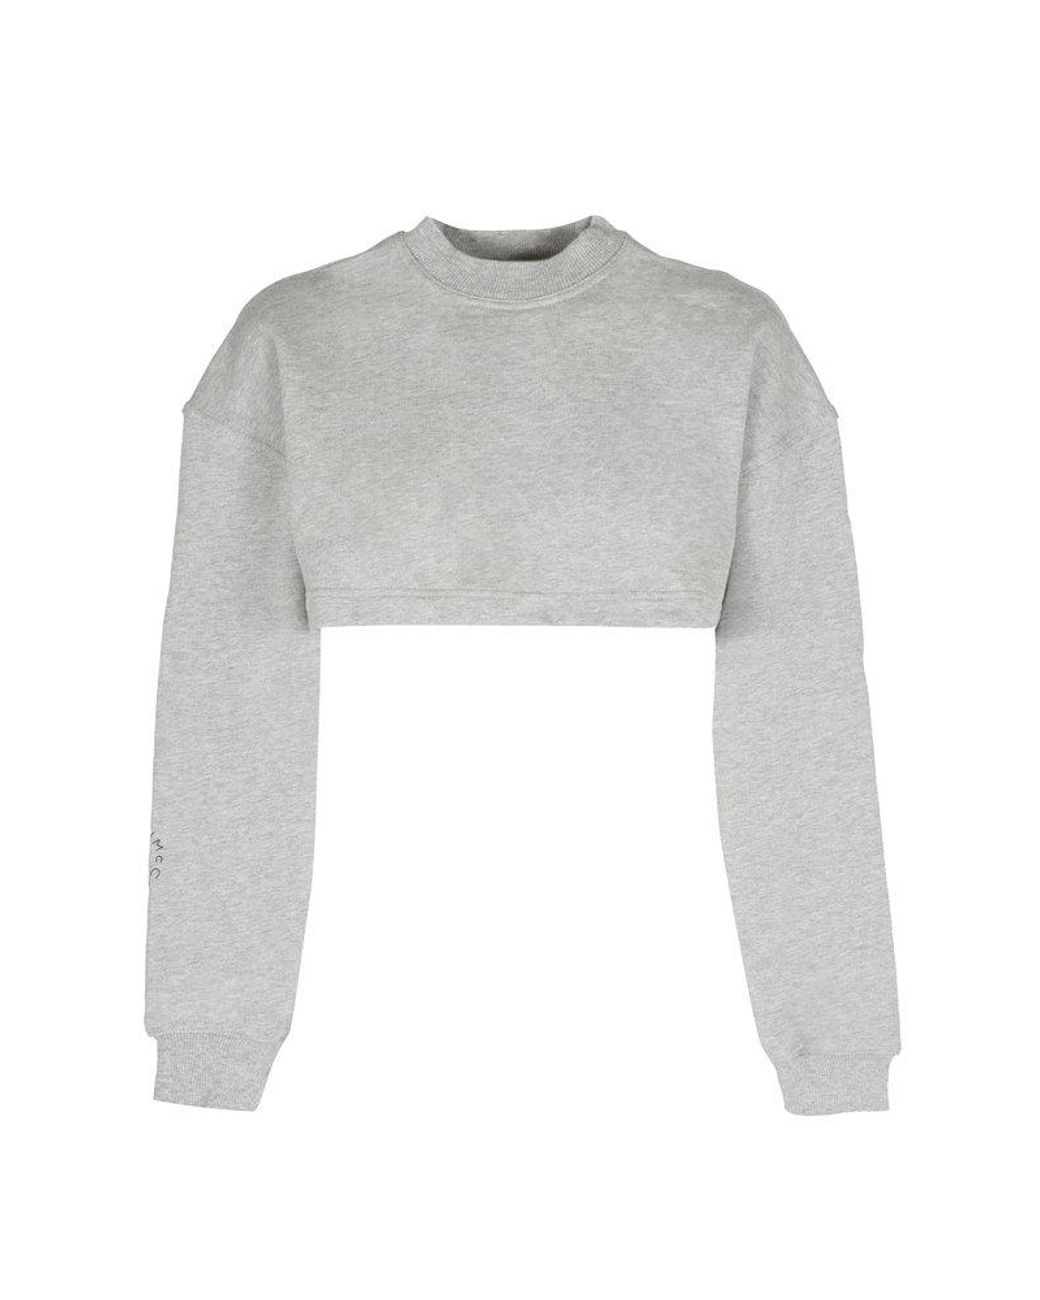 adidas By Stella McCartney Open-back Long-sleeved Sweatshirt in White | Lyst